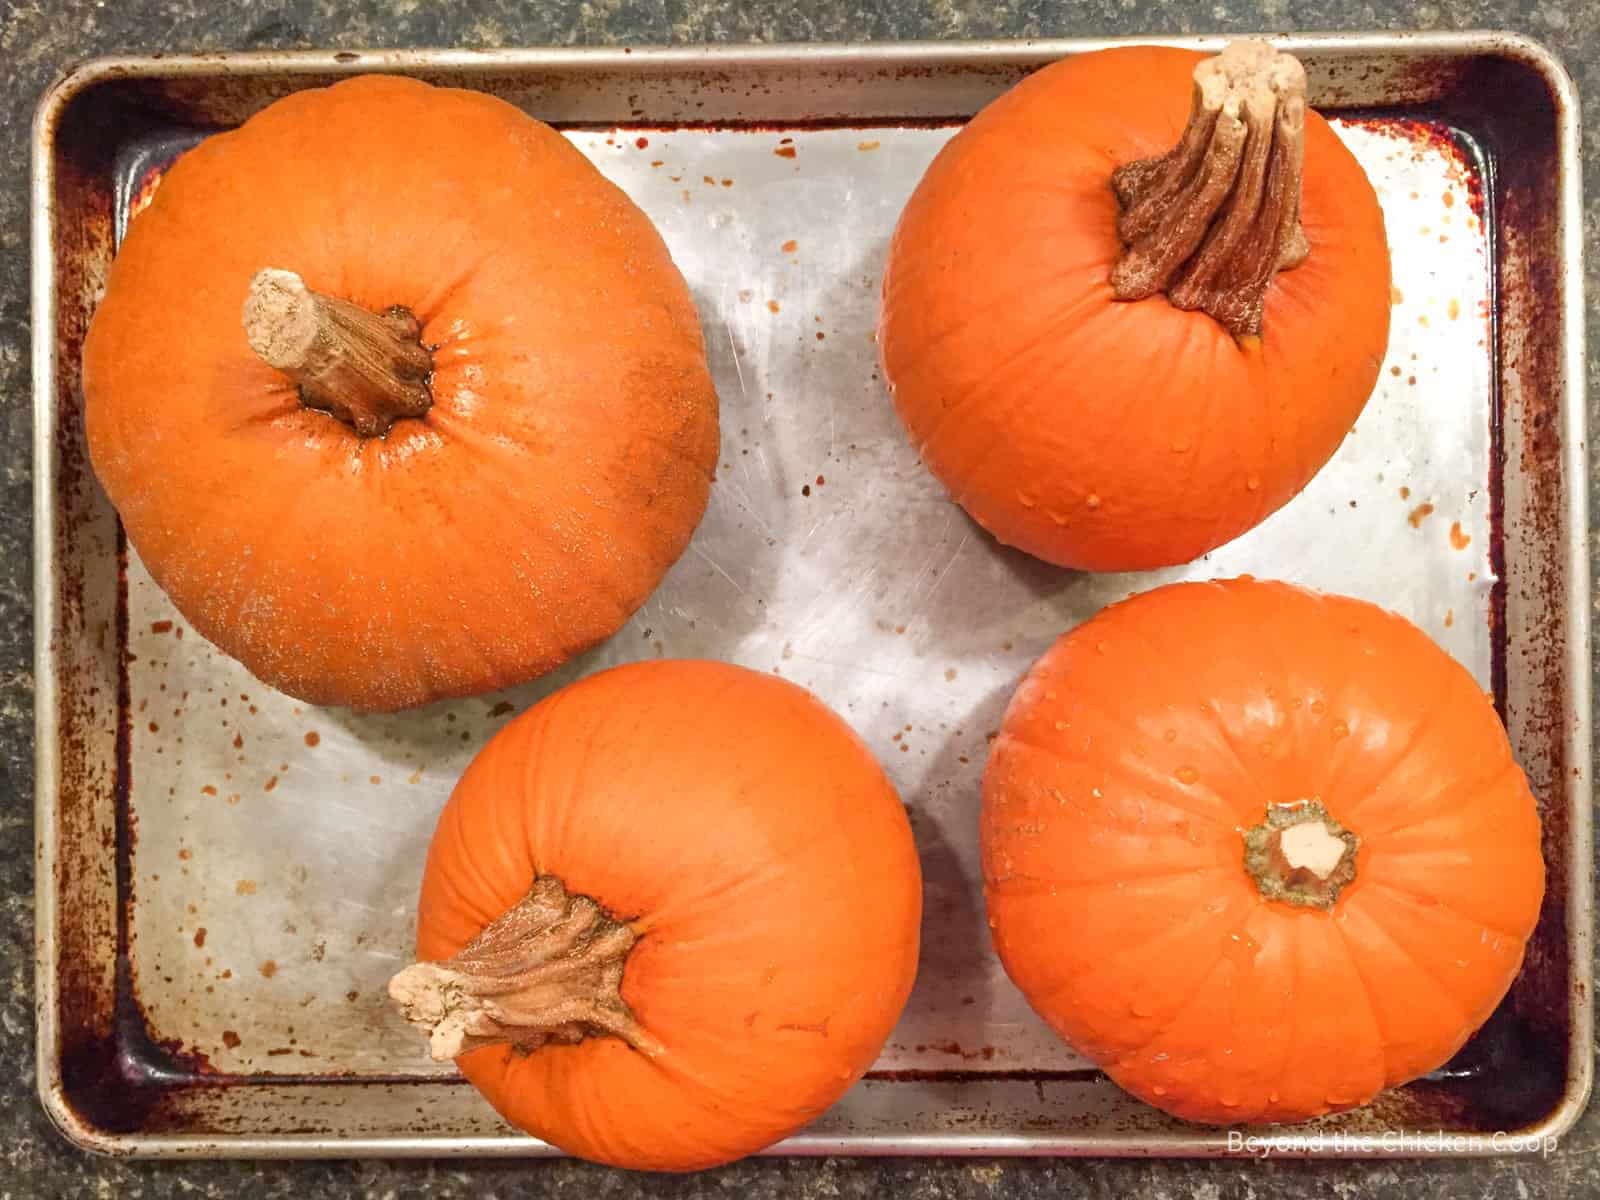 Four small pumpkins on a baking sheet.